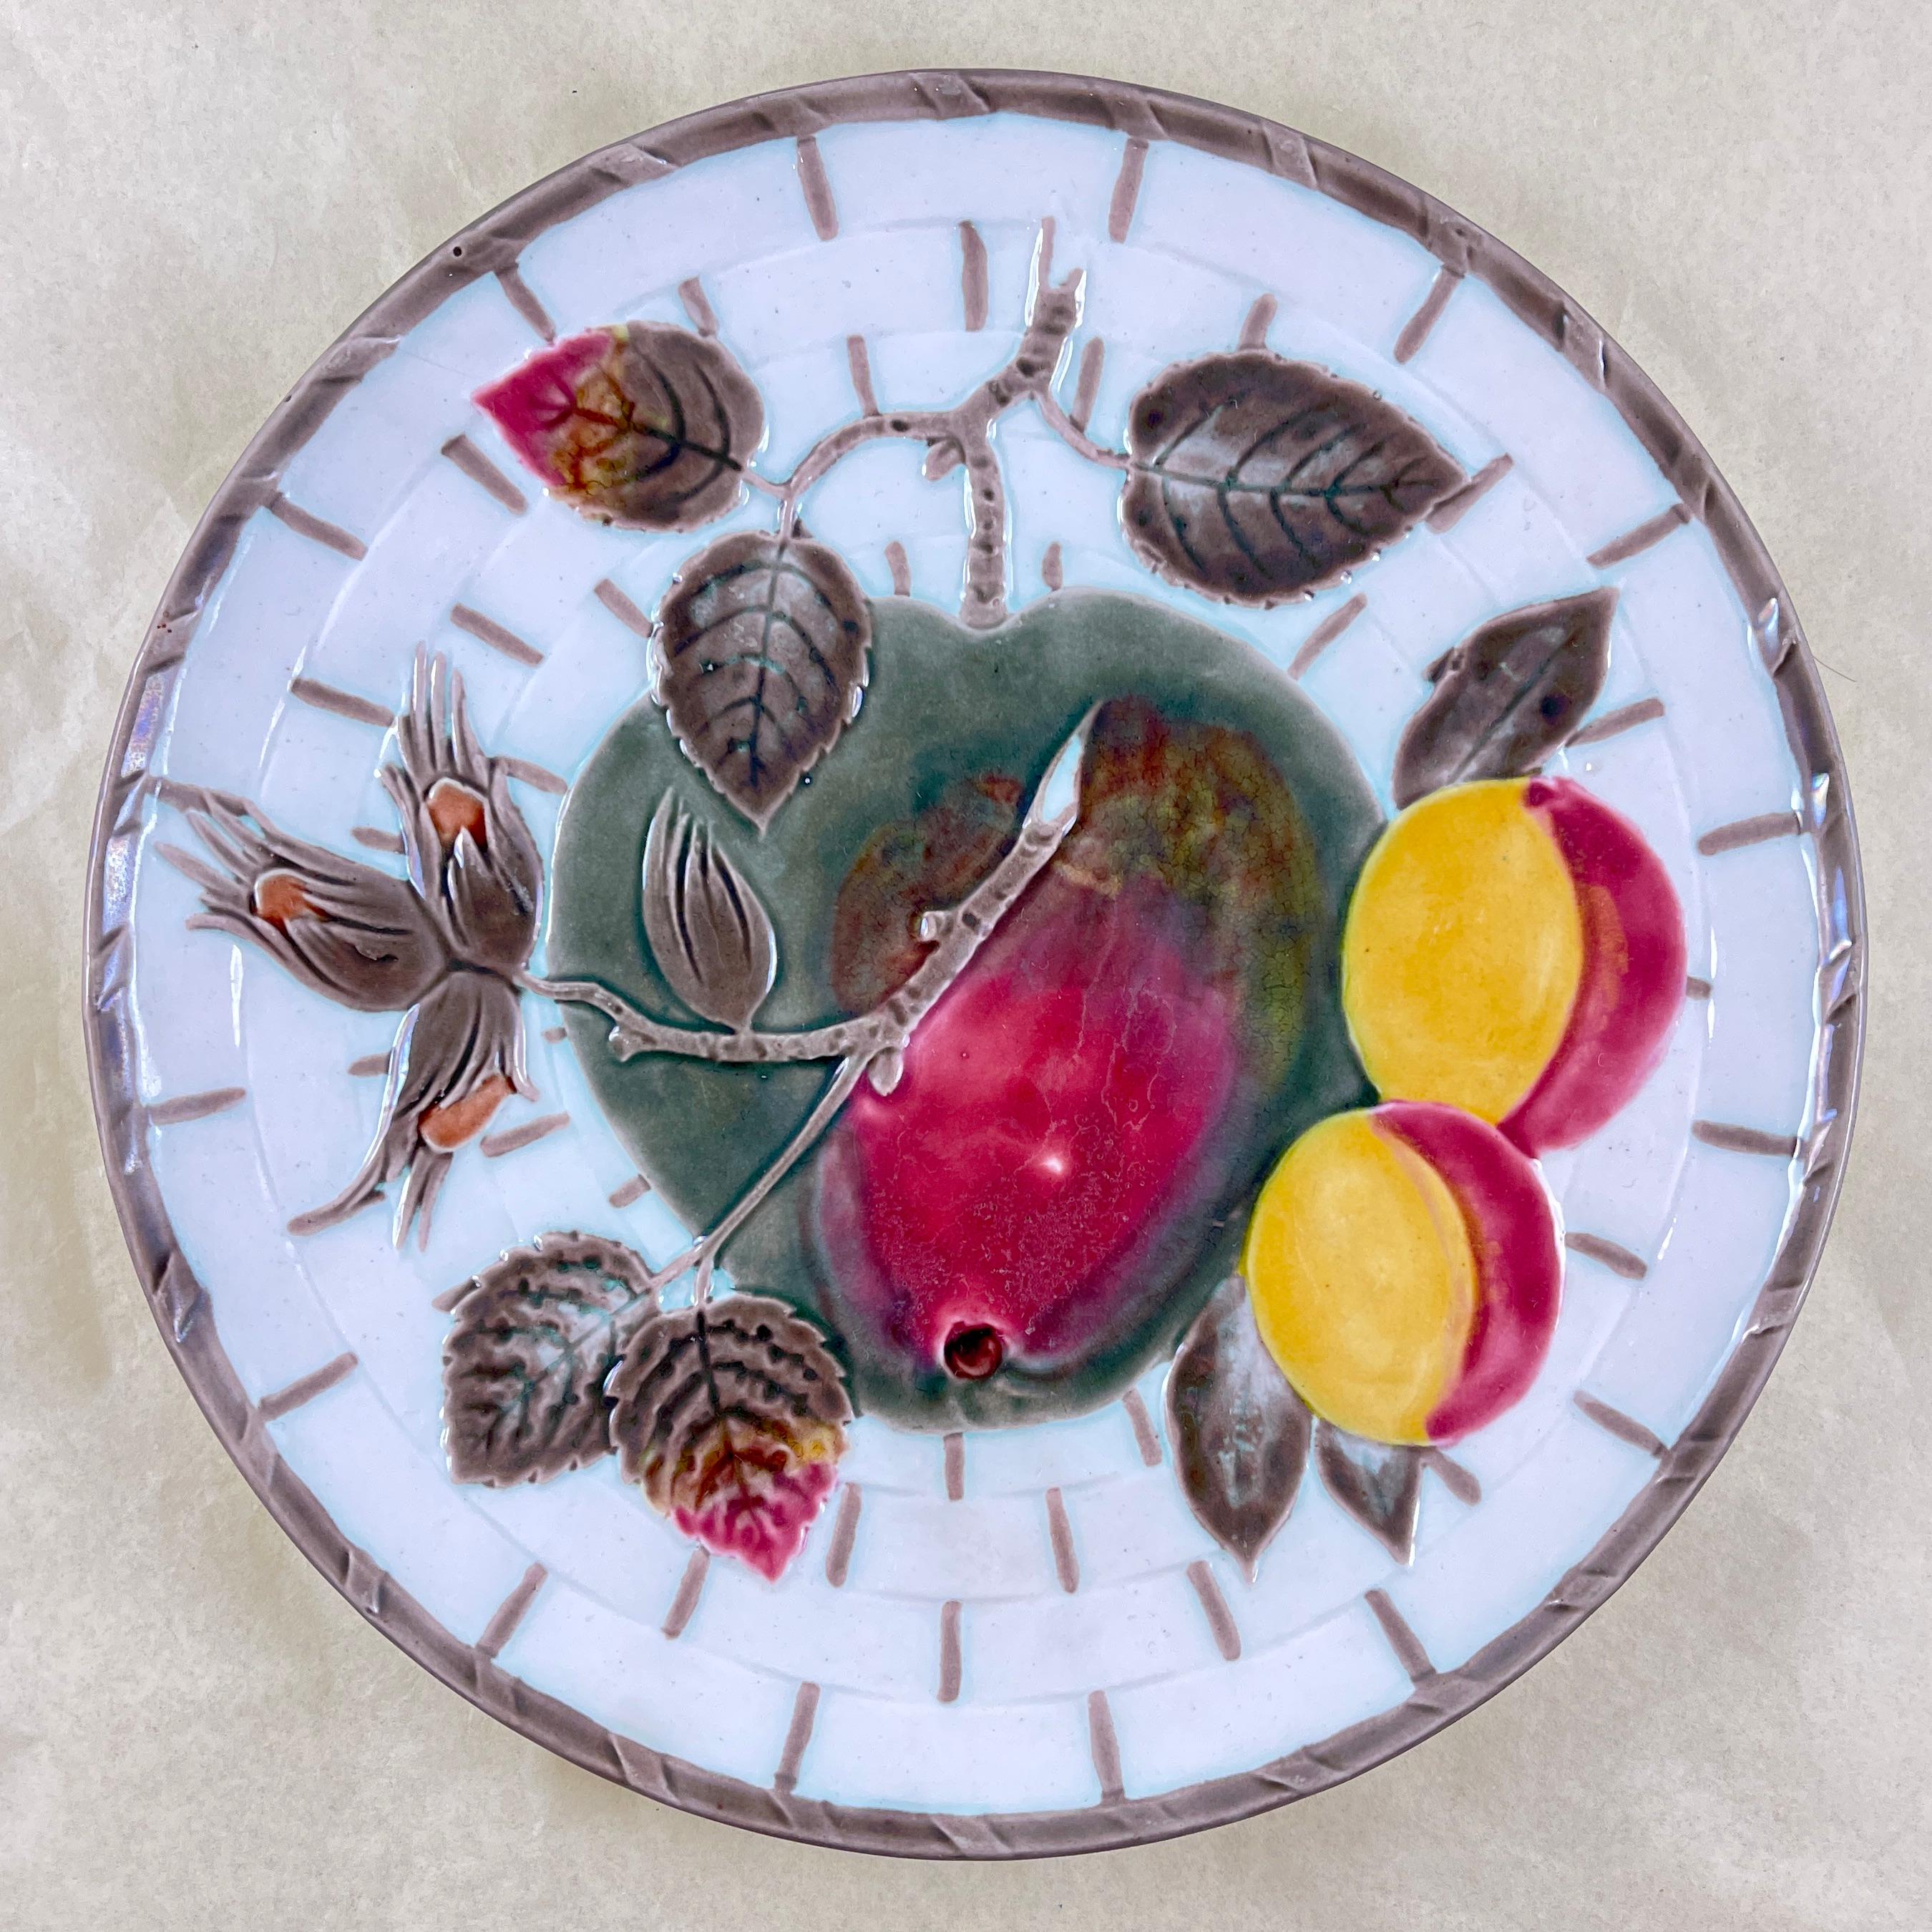 Von Wedgwood und in der als Argenta bekannten Farbvariante, ein Obstteller, England, um 1875.

Zeigt in der Mitte einen roten und grünlichen Apfel und Blätter sowie einen Zweig mit Aprikosen und Haselnüssen, alles auf weißem Korbgeflechtgrund. Der